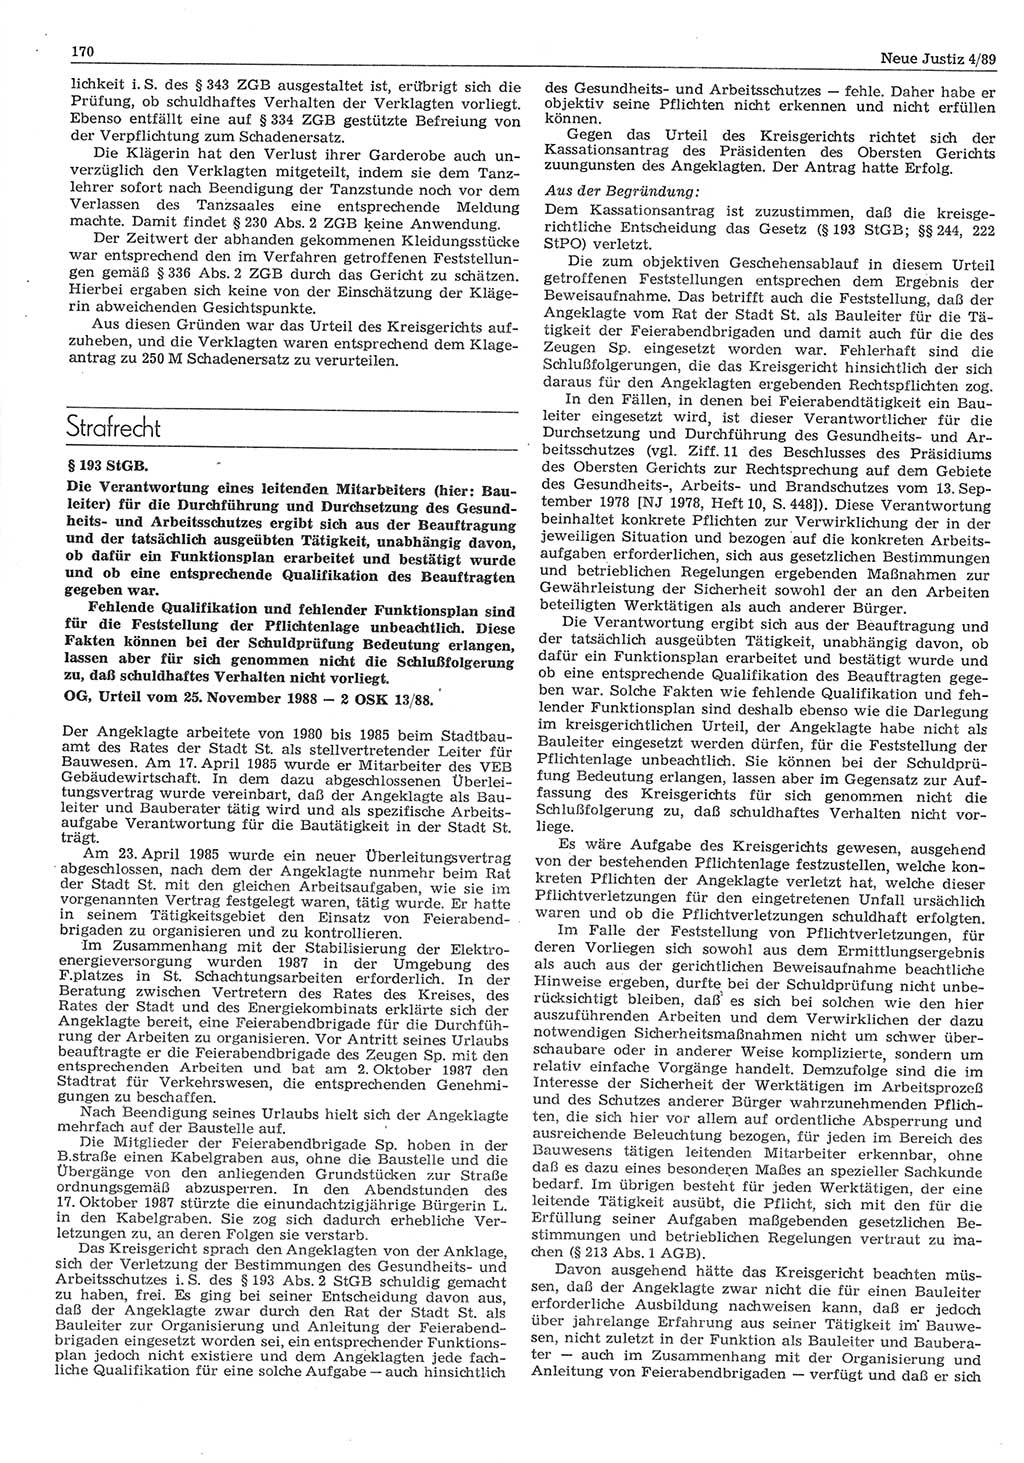 Neue Justiz (NJ), Zeitschrift für sozialistisches Recht und Gesetzlichkeit [Deutsche Demokratische Republik (DDR)], 43. Jahrgang 1989, Seite 170 (NJ DDR 1989, S. 170)